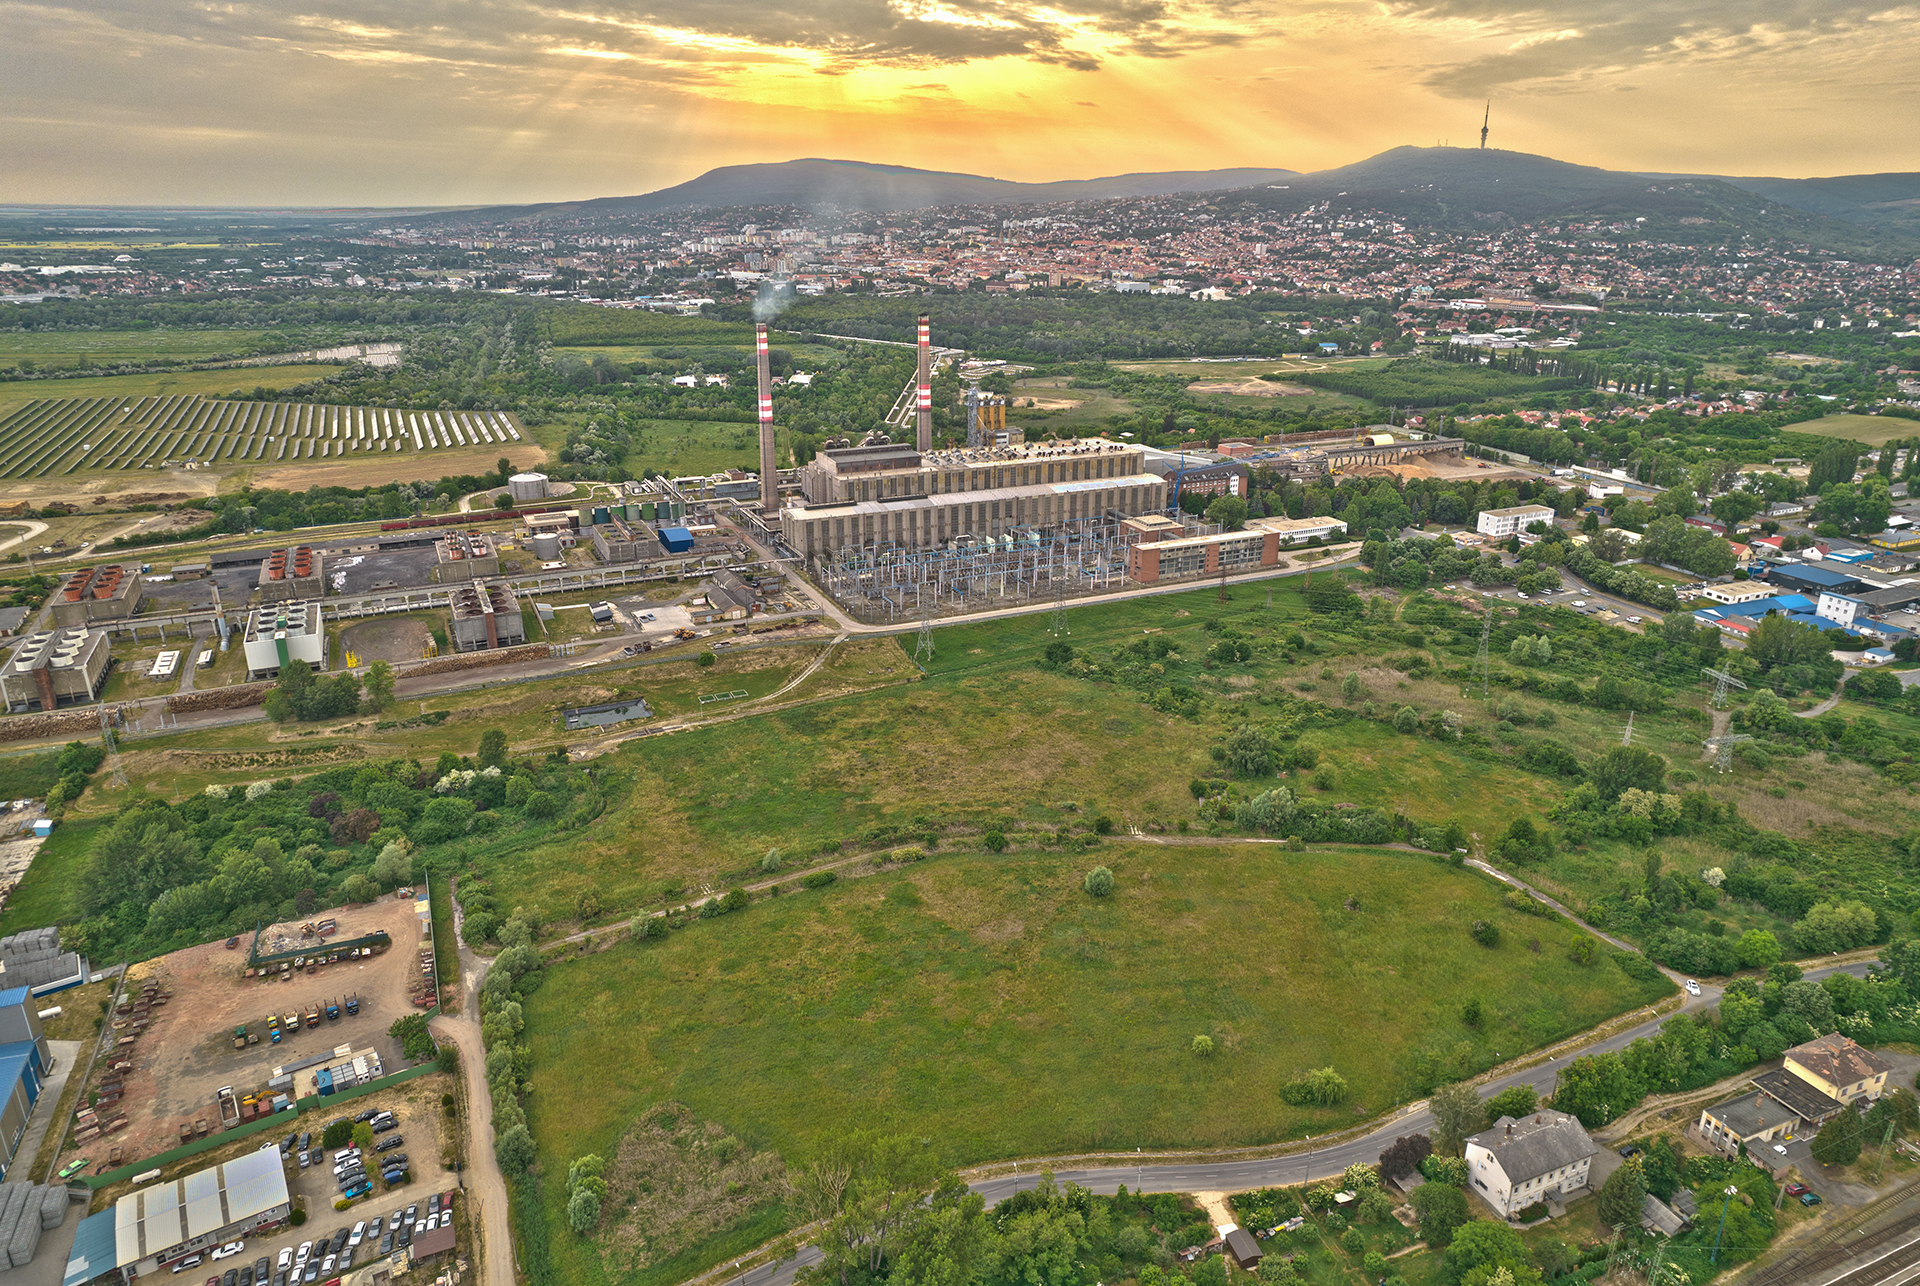 Eladó Pécs déli részén 5456 m² iparterület  kedvező áron